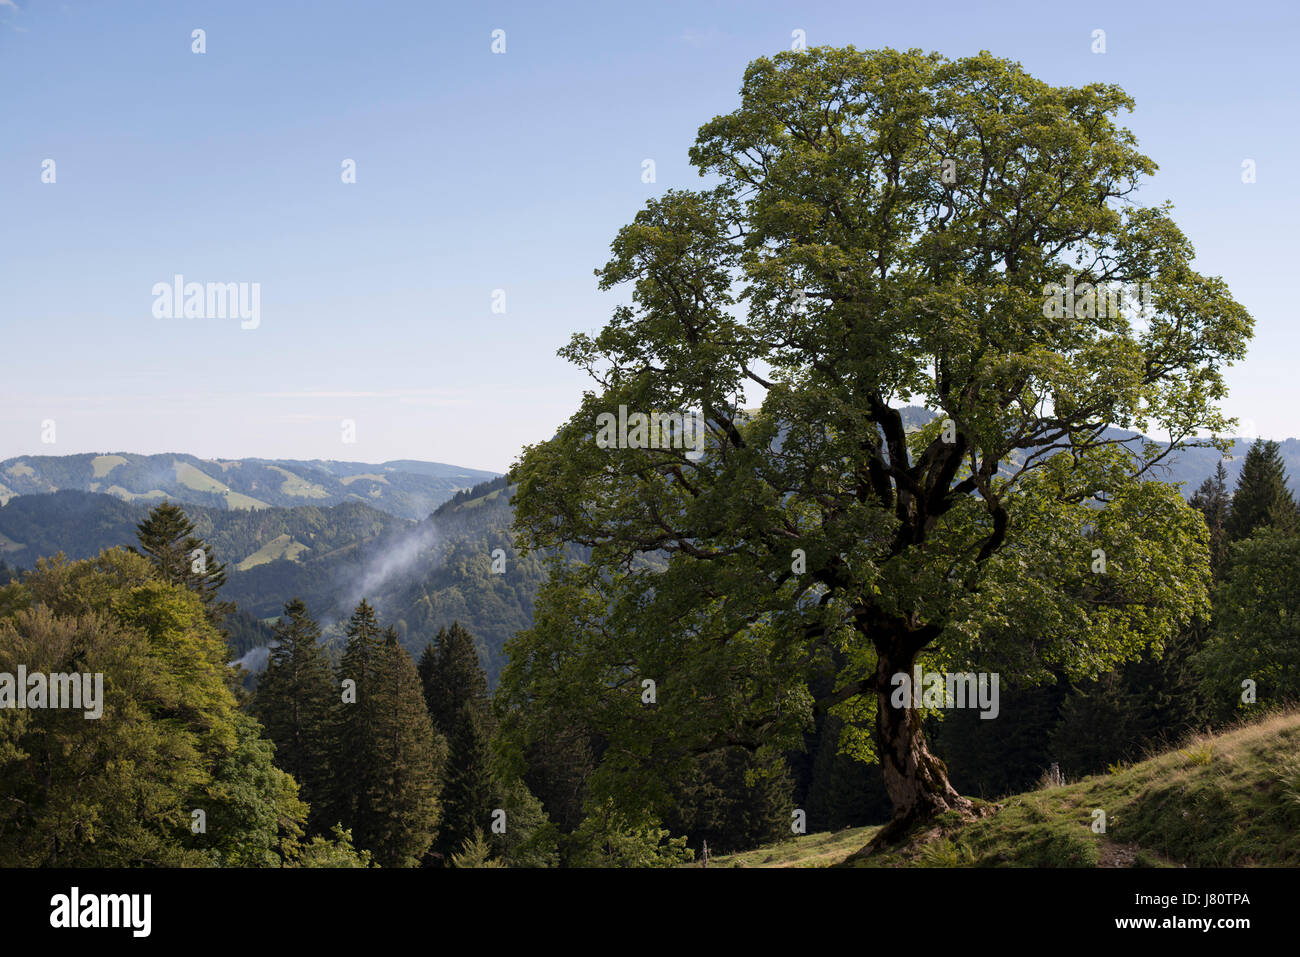 Ahornbaum beim Aufstieg auf die Nagelfluhkette, Allgäuer Alpen, Deutschland. Parco Naturale Nagelfluhkette nelle Alpi Allgäu, Germania Foto Stock